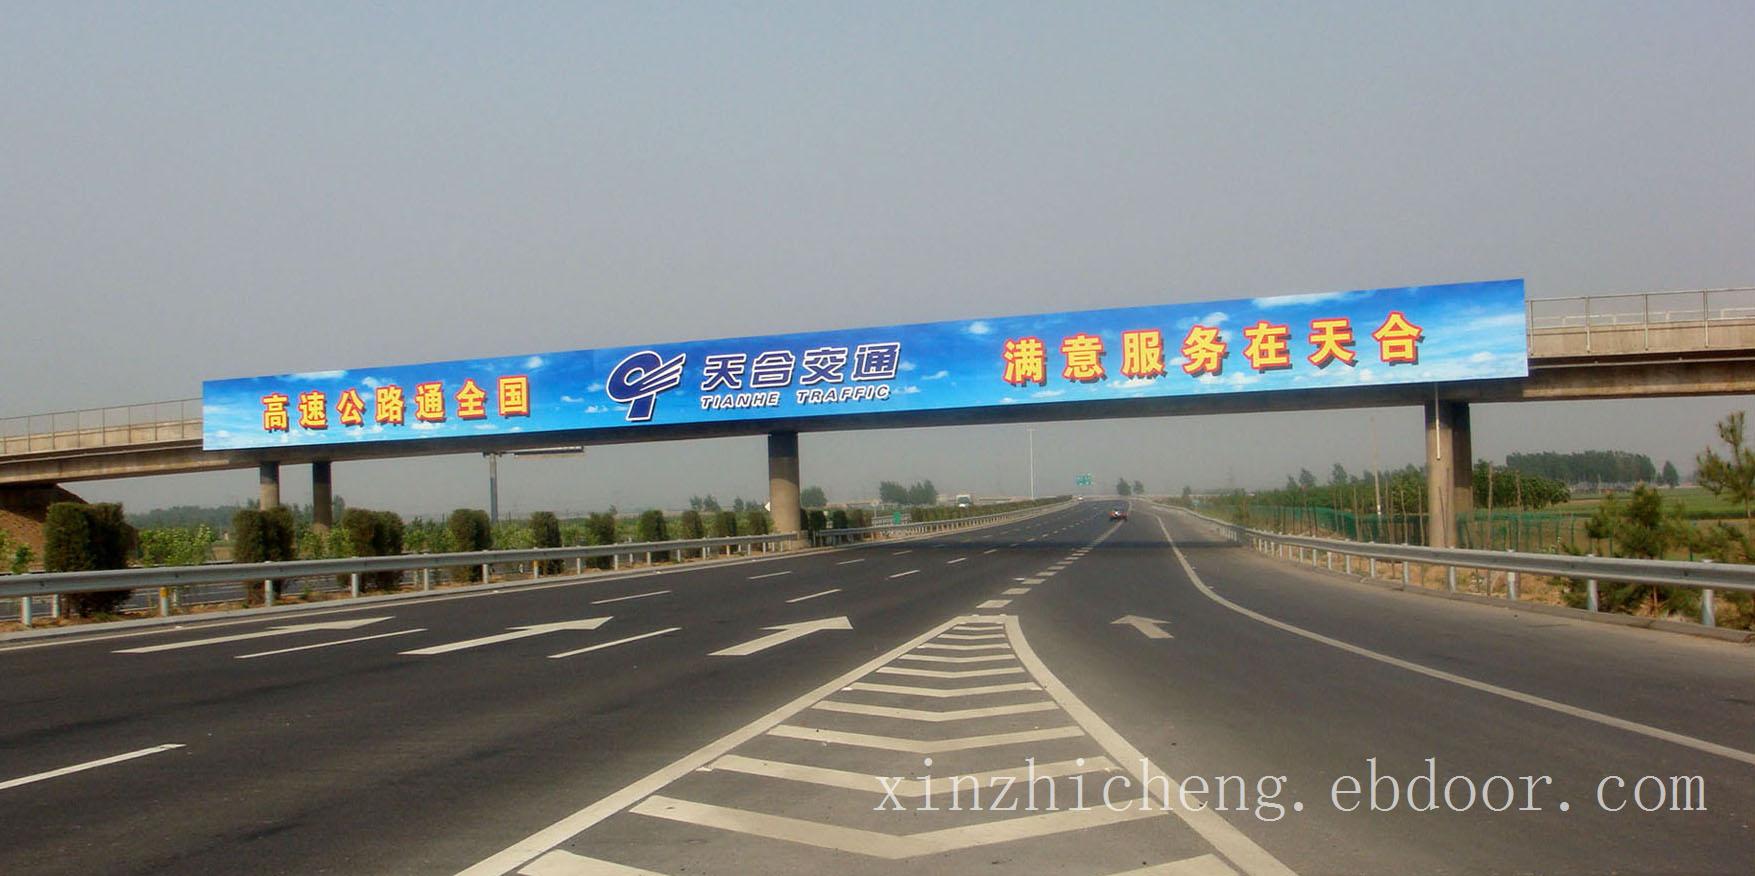 桥梁广告/上海广告公司/VI设计/上海户外广告工程